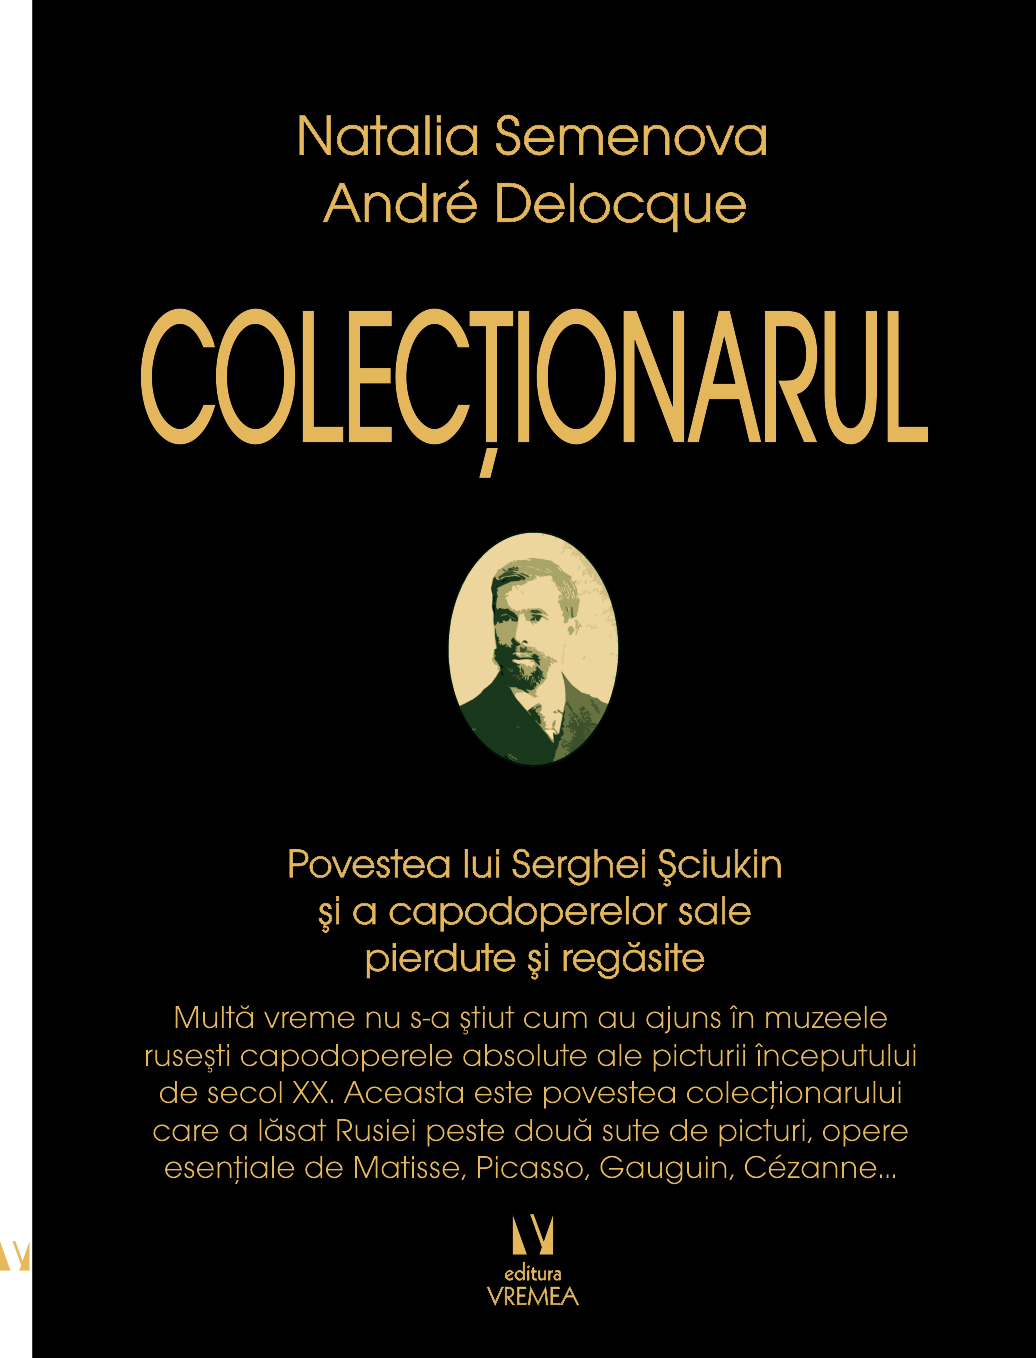 Colectionarul | Natalia Semenova, Andre Delocque Andre imagine 2022